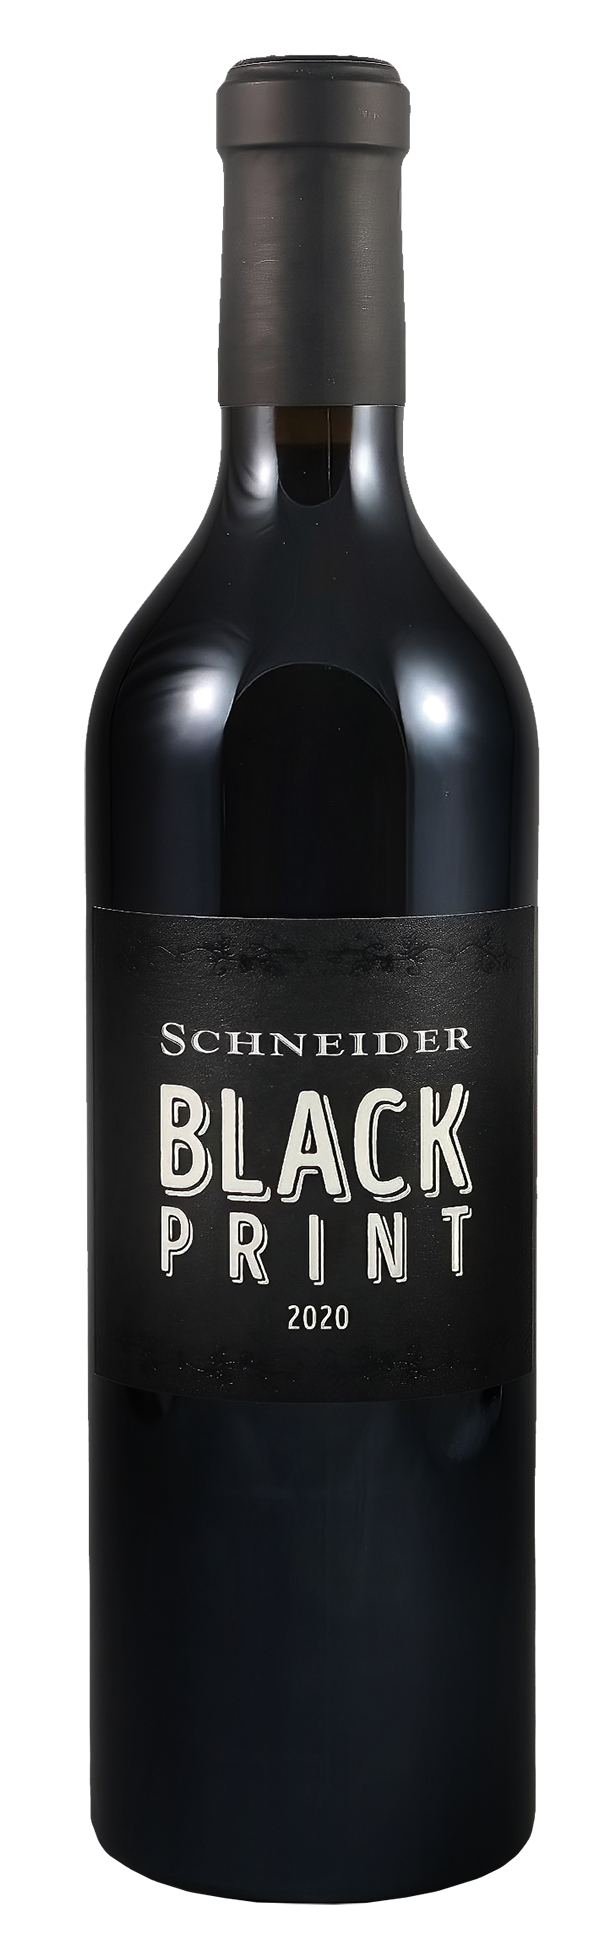 Schneider Black Print 2020